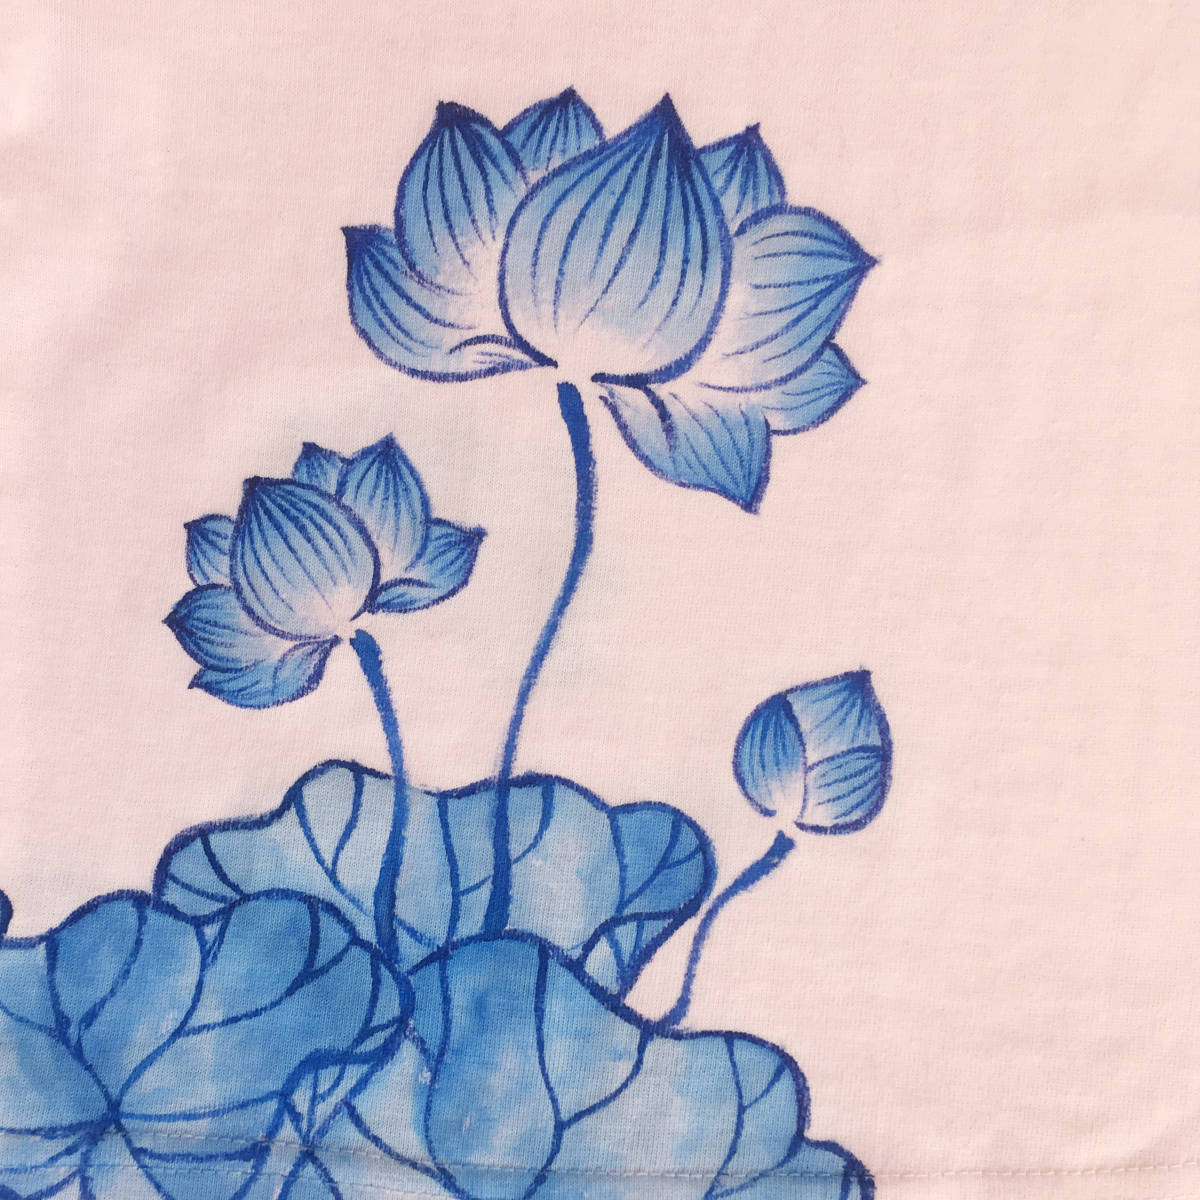 キッズ Tシャツ 140サイズ ピンク 蓮柄Tシャツ 手描きで描いた蓮の花柄Tシャツ 半袖 和柄 和風 レトロ ハンドメイド